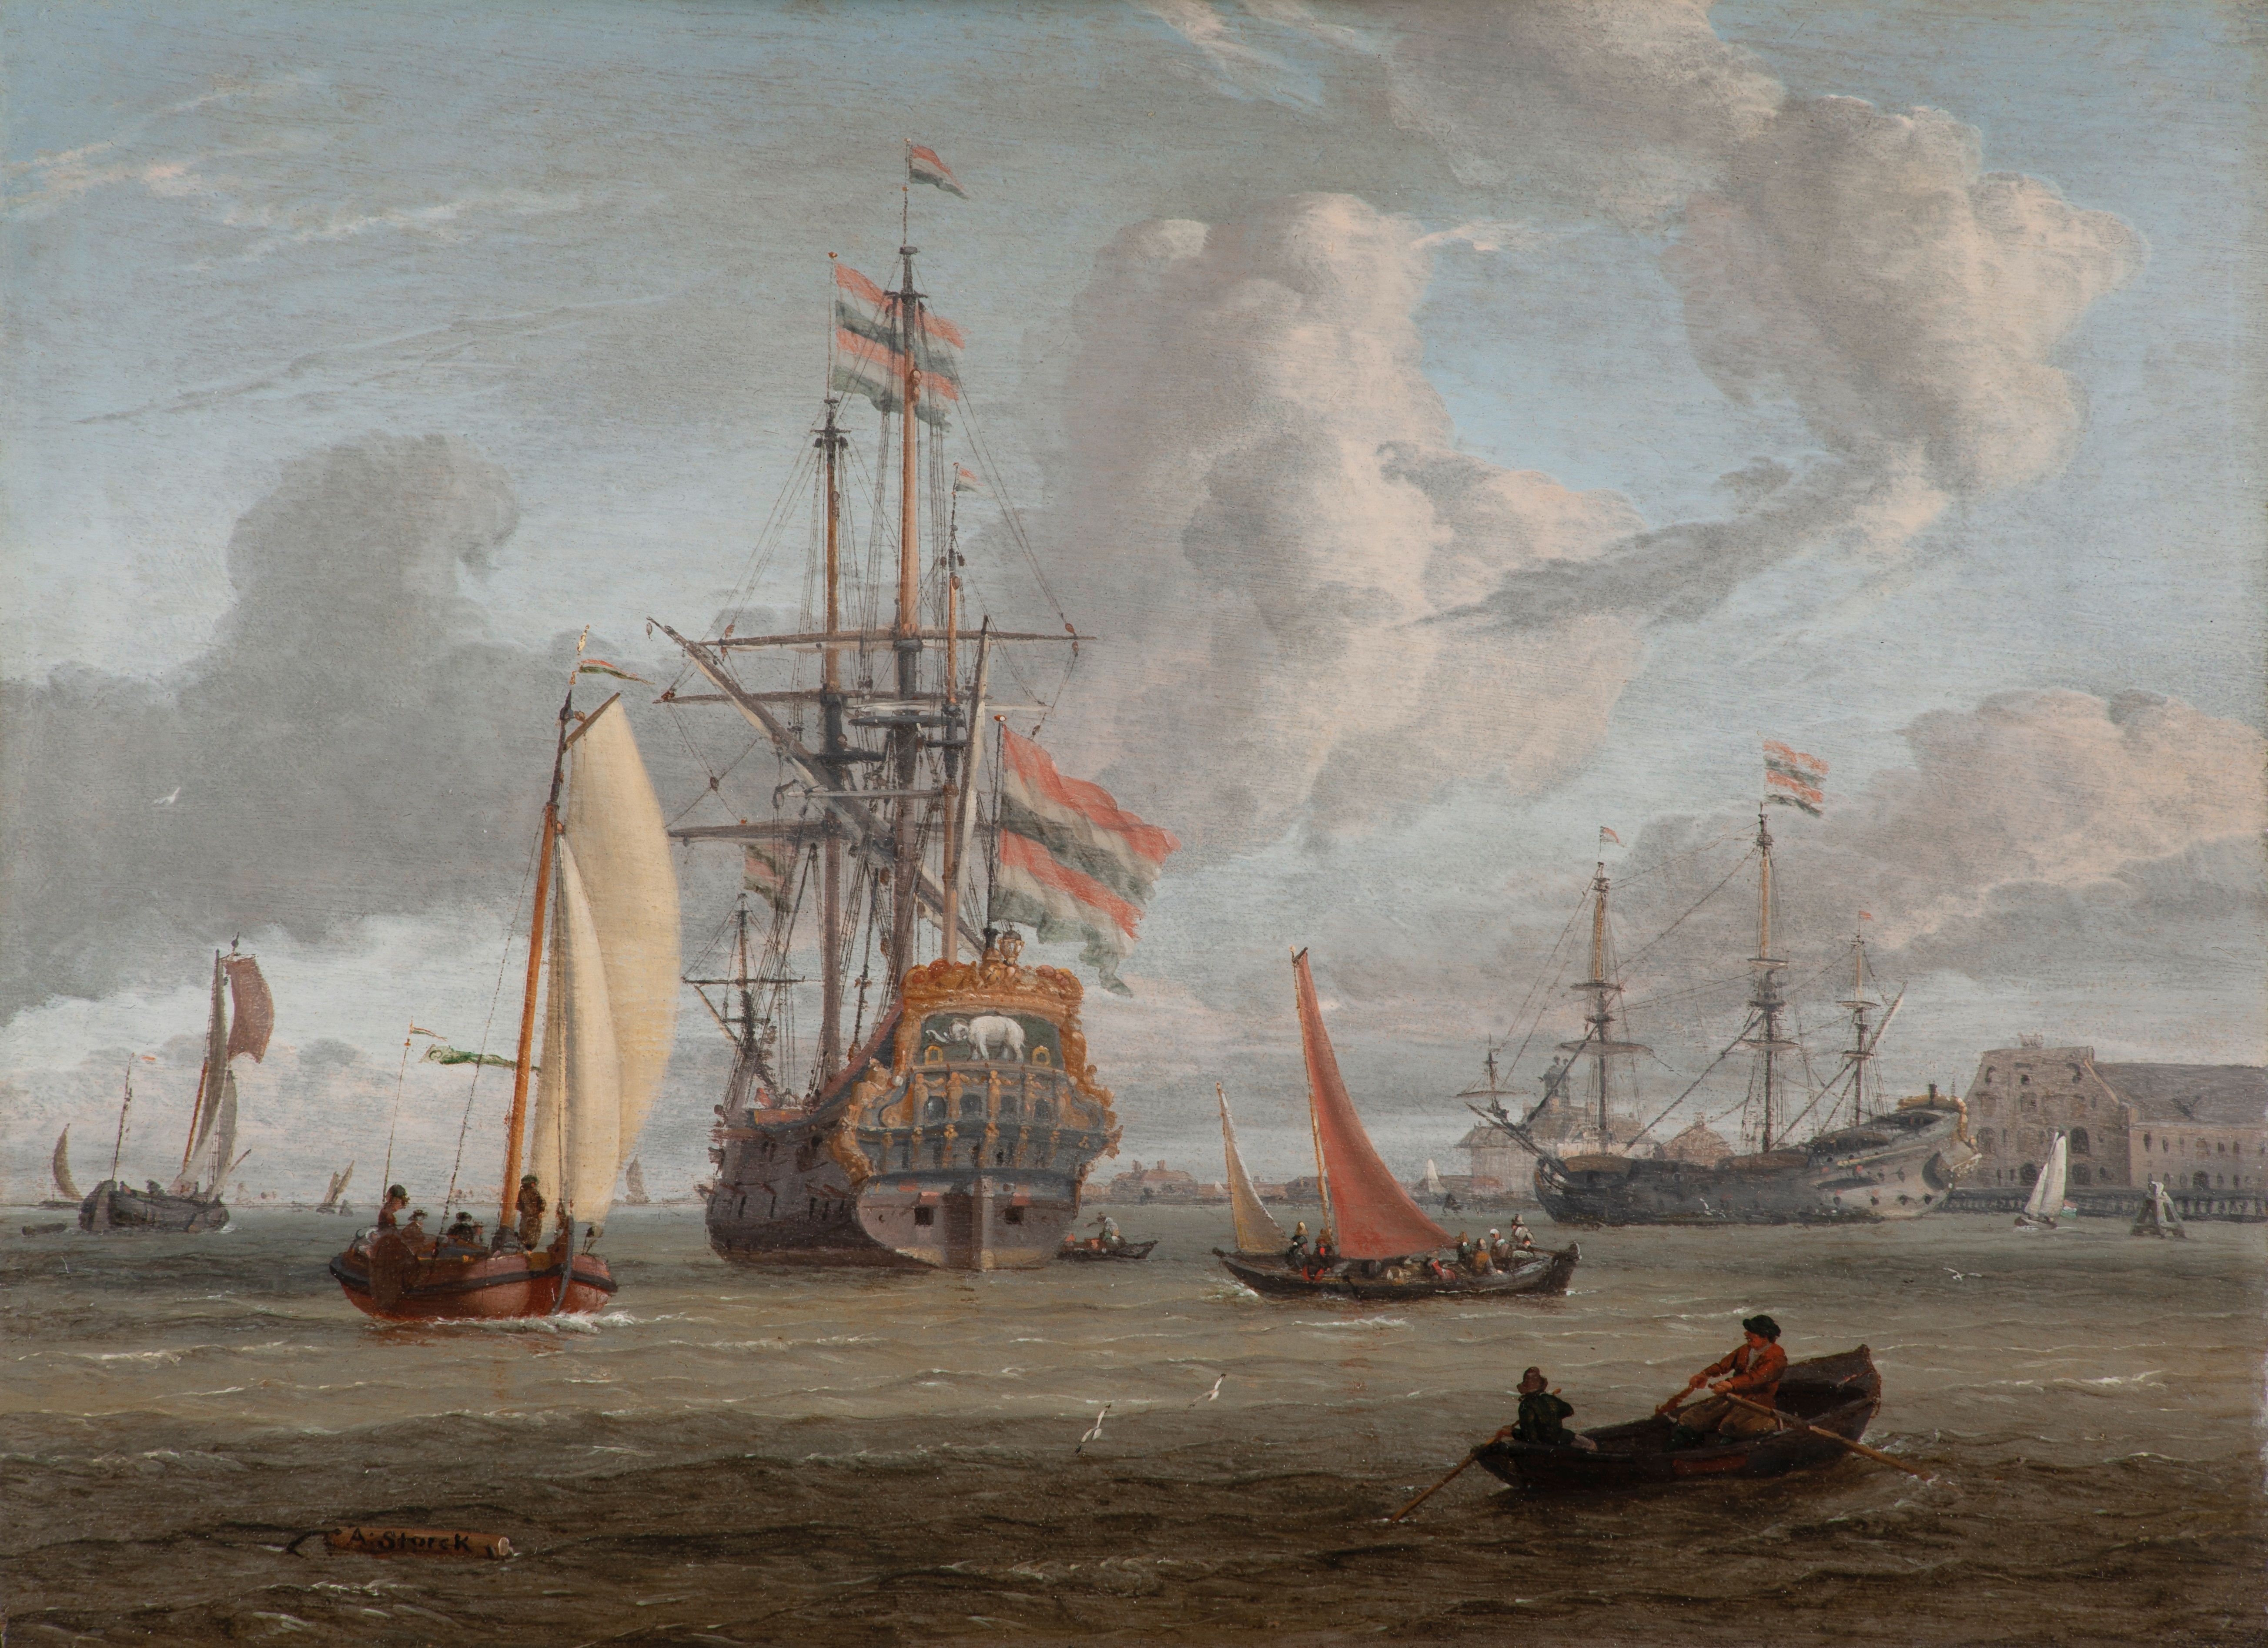 Parmi les oeuvres léguées figure cette ambitieuse marine d’Abraham Jansz Storck (c.1635-1708), intitulée « Grand Navire de la couronne du Danemark près d’un littoral. DR